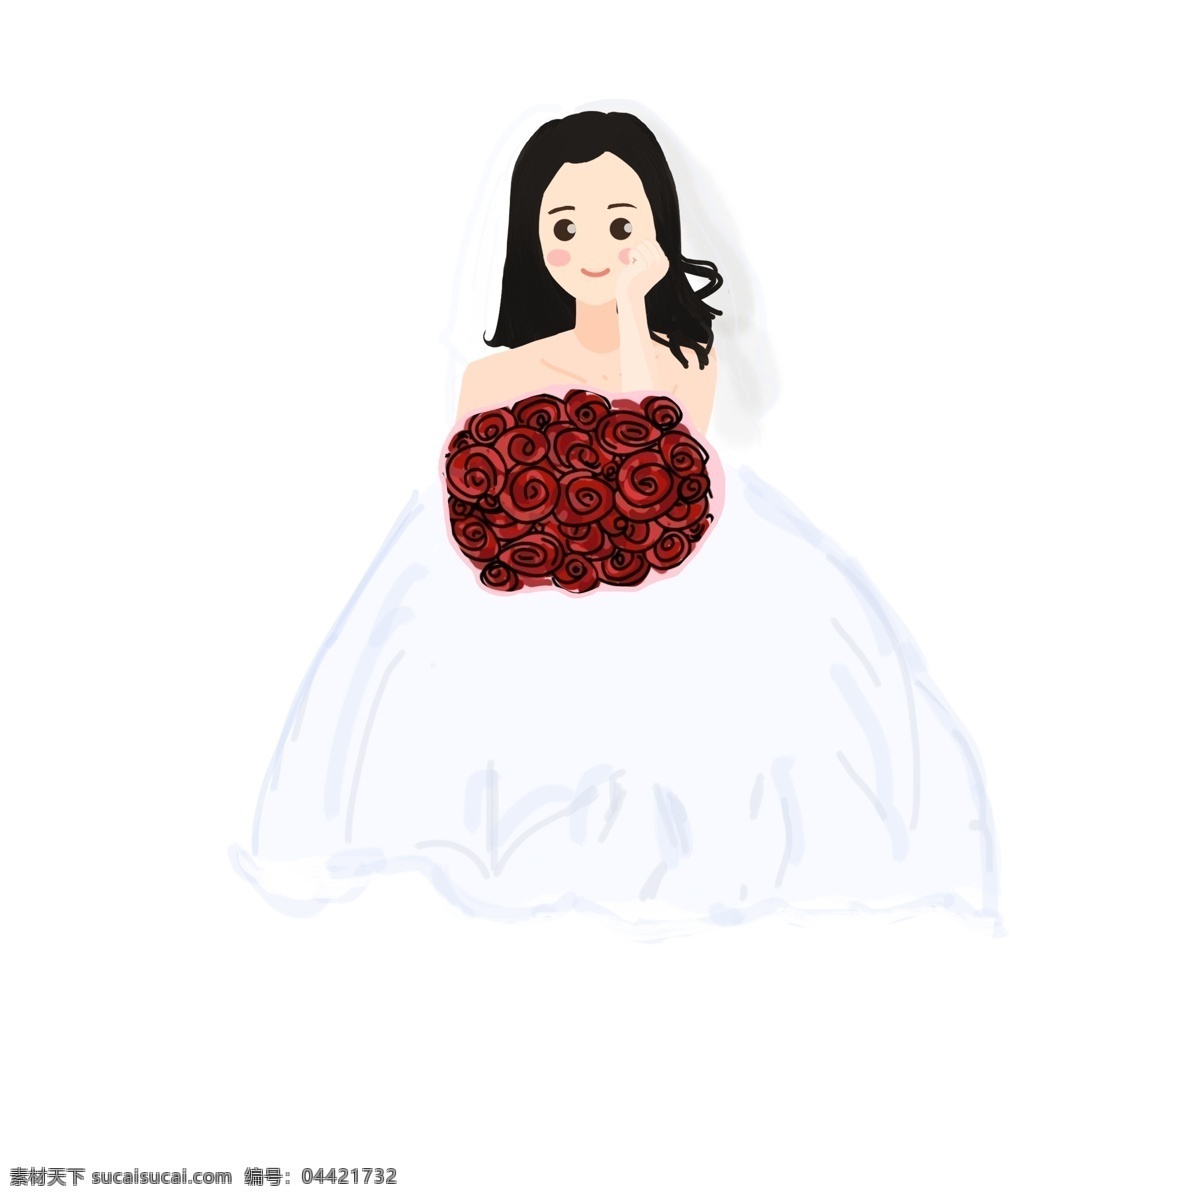 可爱 卡通 手绘 风 手持 玫瑰 幸福 女孩 婚纱